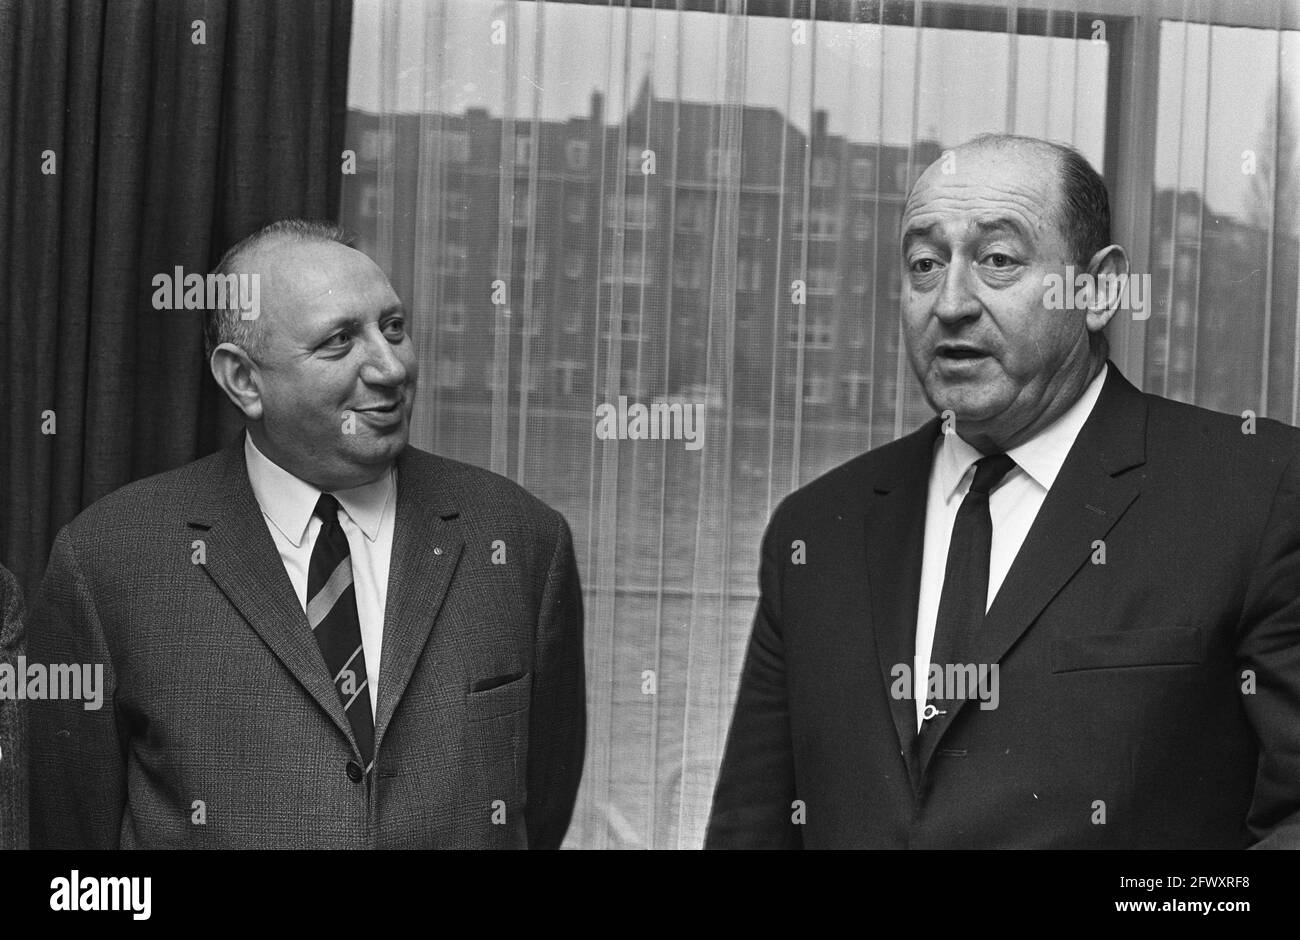 Conferenza stampa sulle obbligazioni dello Stato d'Israele all'Apollo Hotel. Generale Avraham Yoffe in conversazione con Rabbi Dr. J. Soetendorp, 5 dicembre 1967, intervista Foto Stock